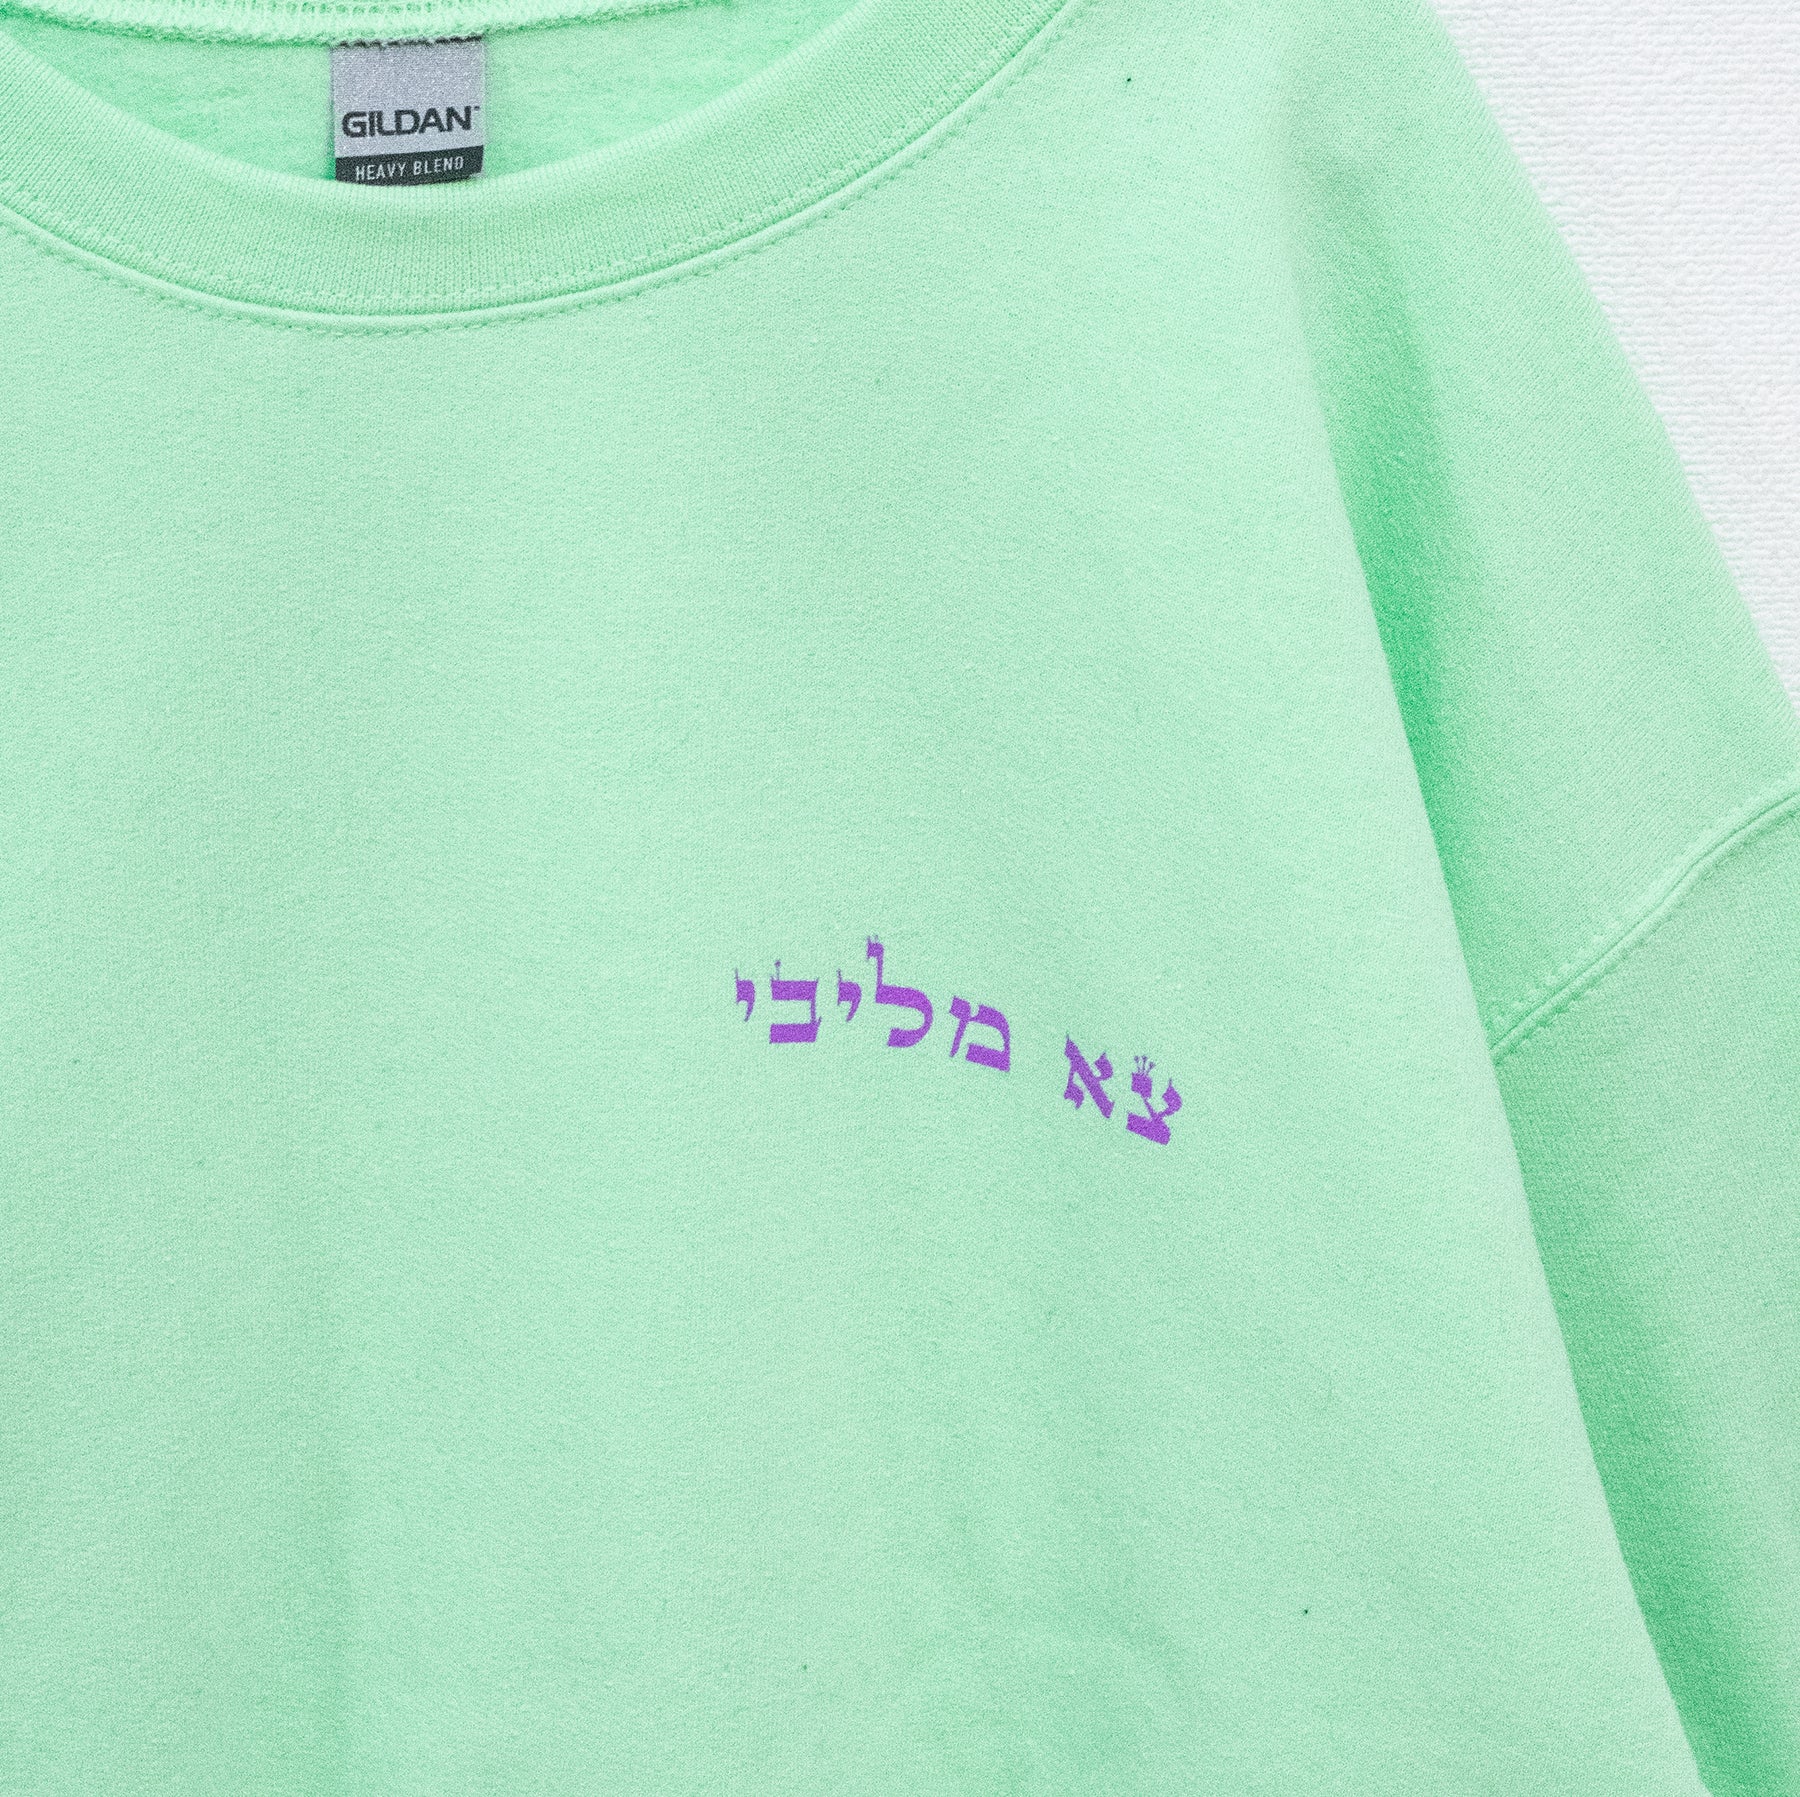 TRACY x NOIKISU Garter Girl Sweatshirt (3 color) - YOUAREMYPOISON